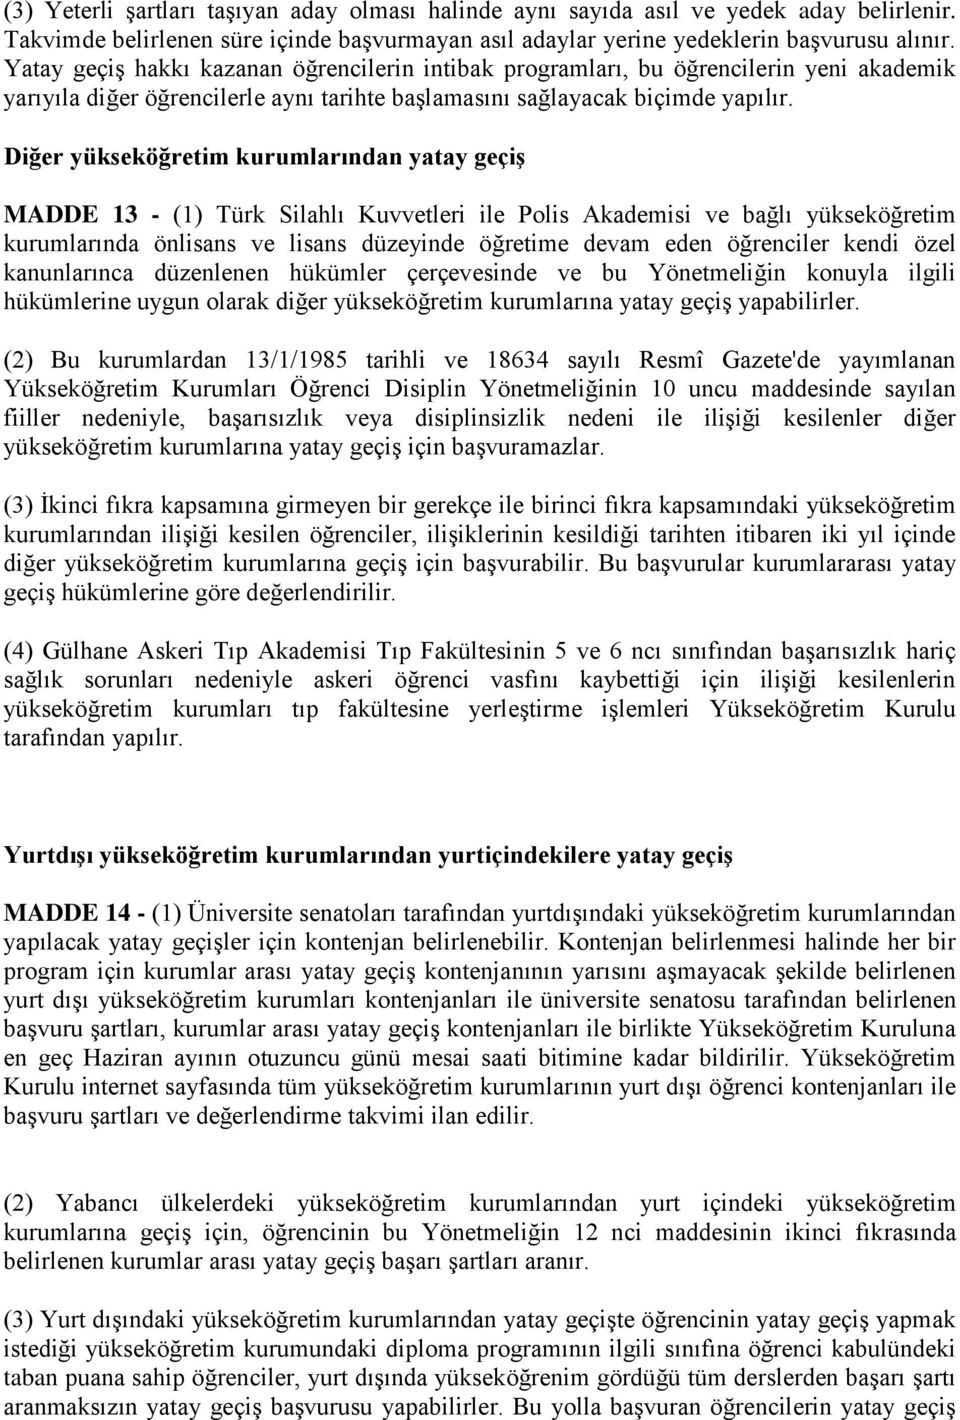 Diğer yükseköğretim kurumlarından yatay geçiş MADDE 13 - (1) Türk Silahlı Kuvvetleri ile Polis Akademisi ve bağlı yükseköğretim kurumlarında önlisans ve lisans düzeyinde öğretime devam eden